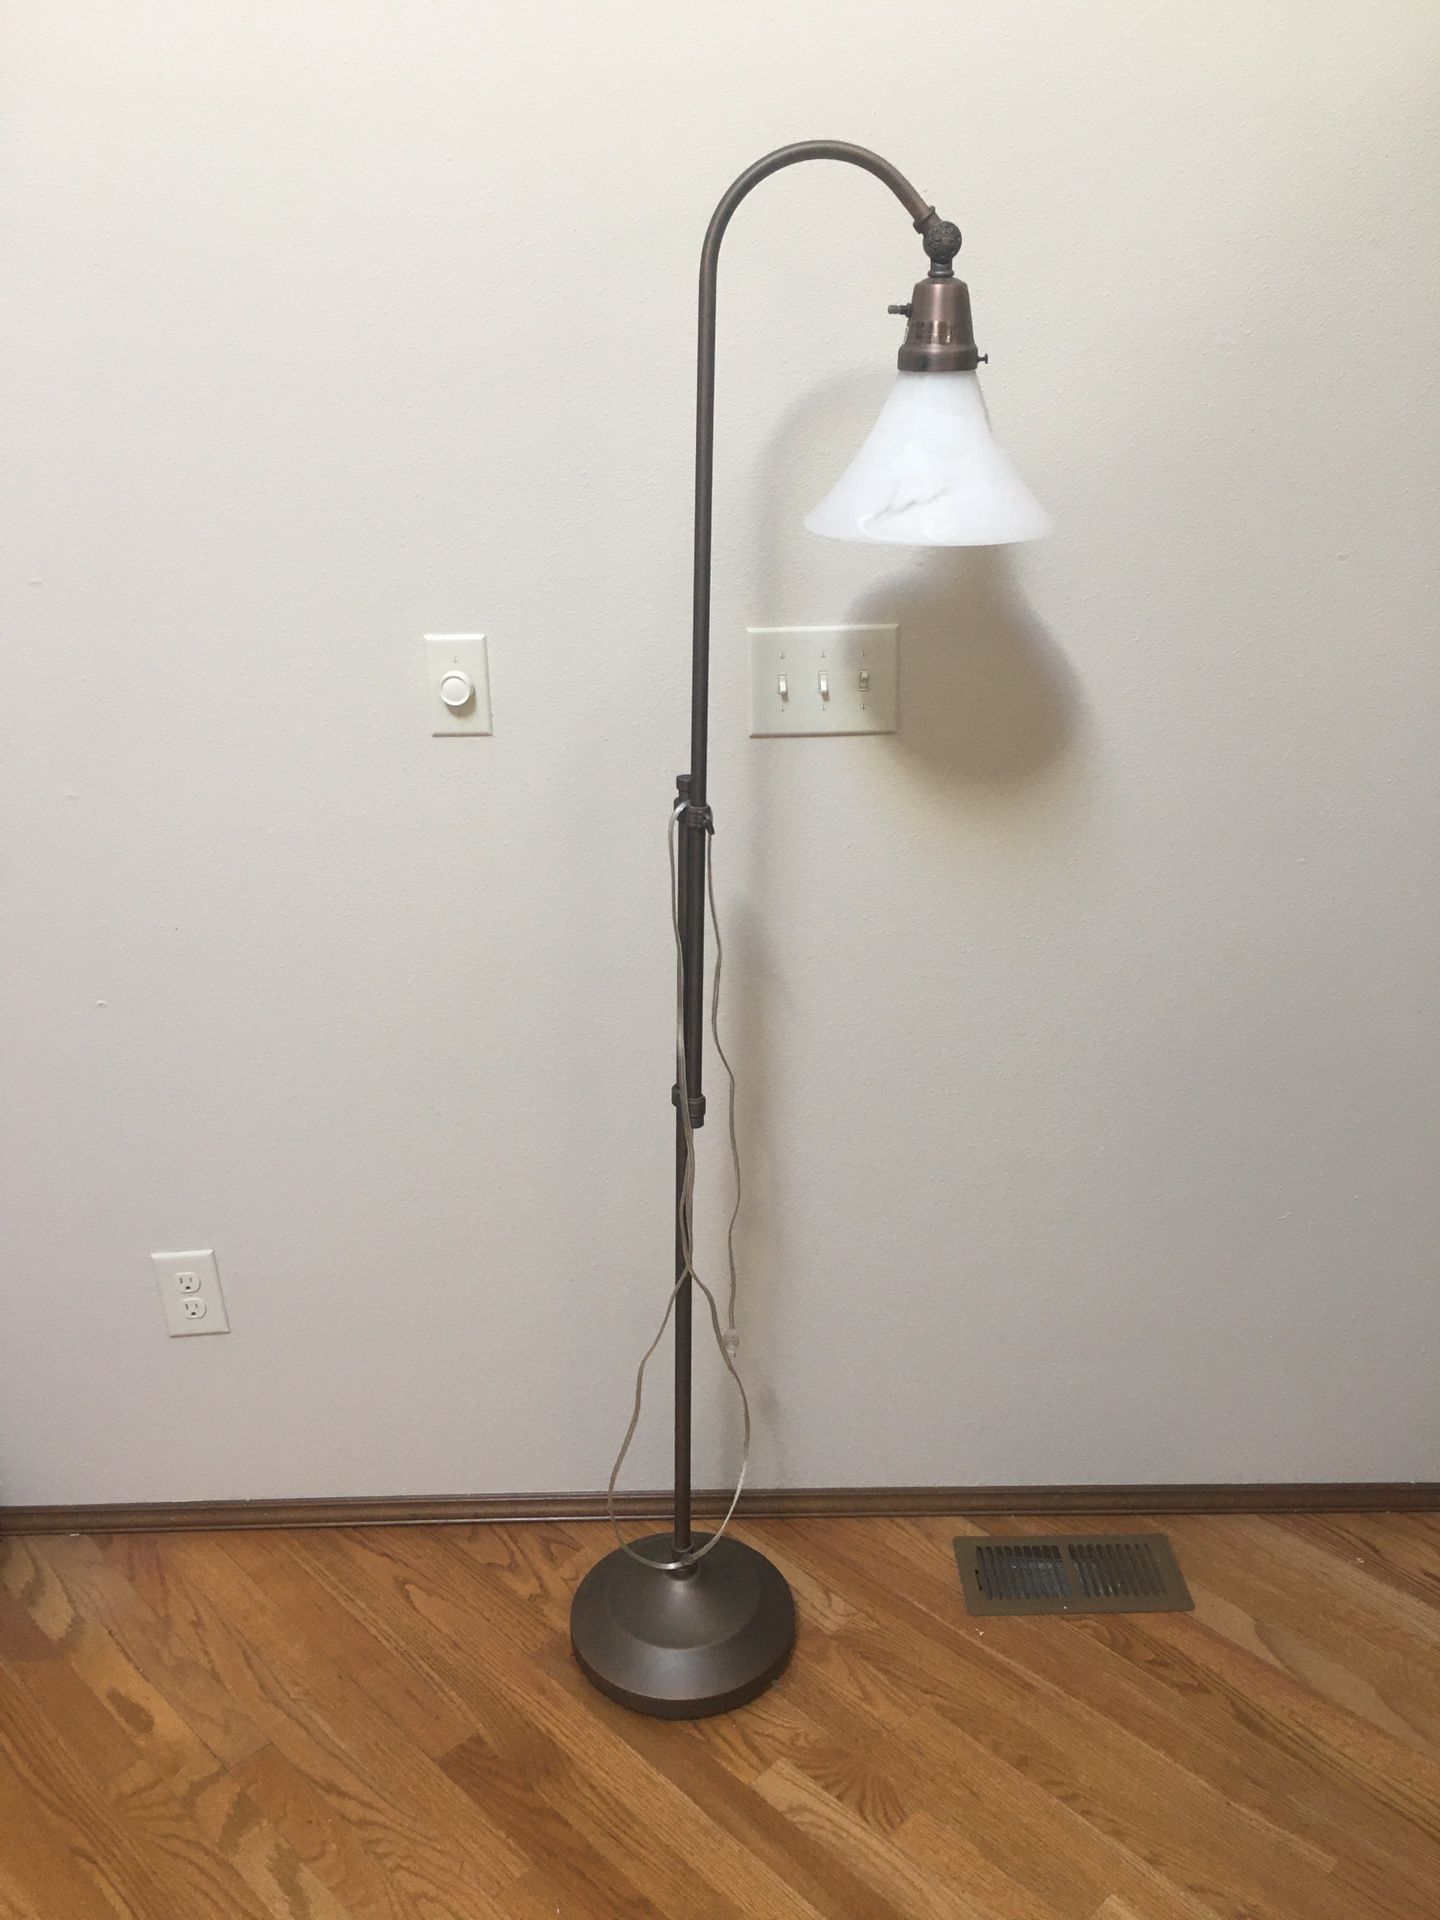 Adjustable height floor lamp